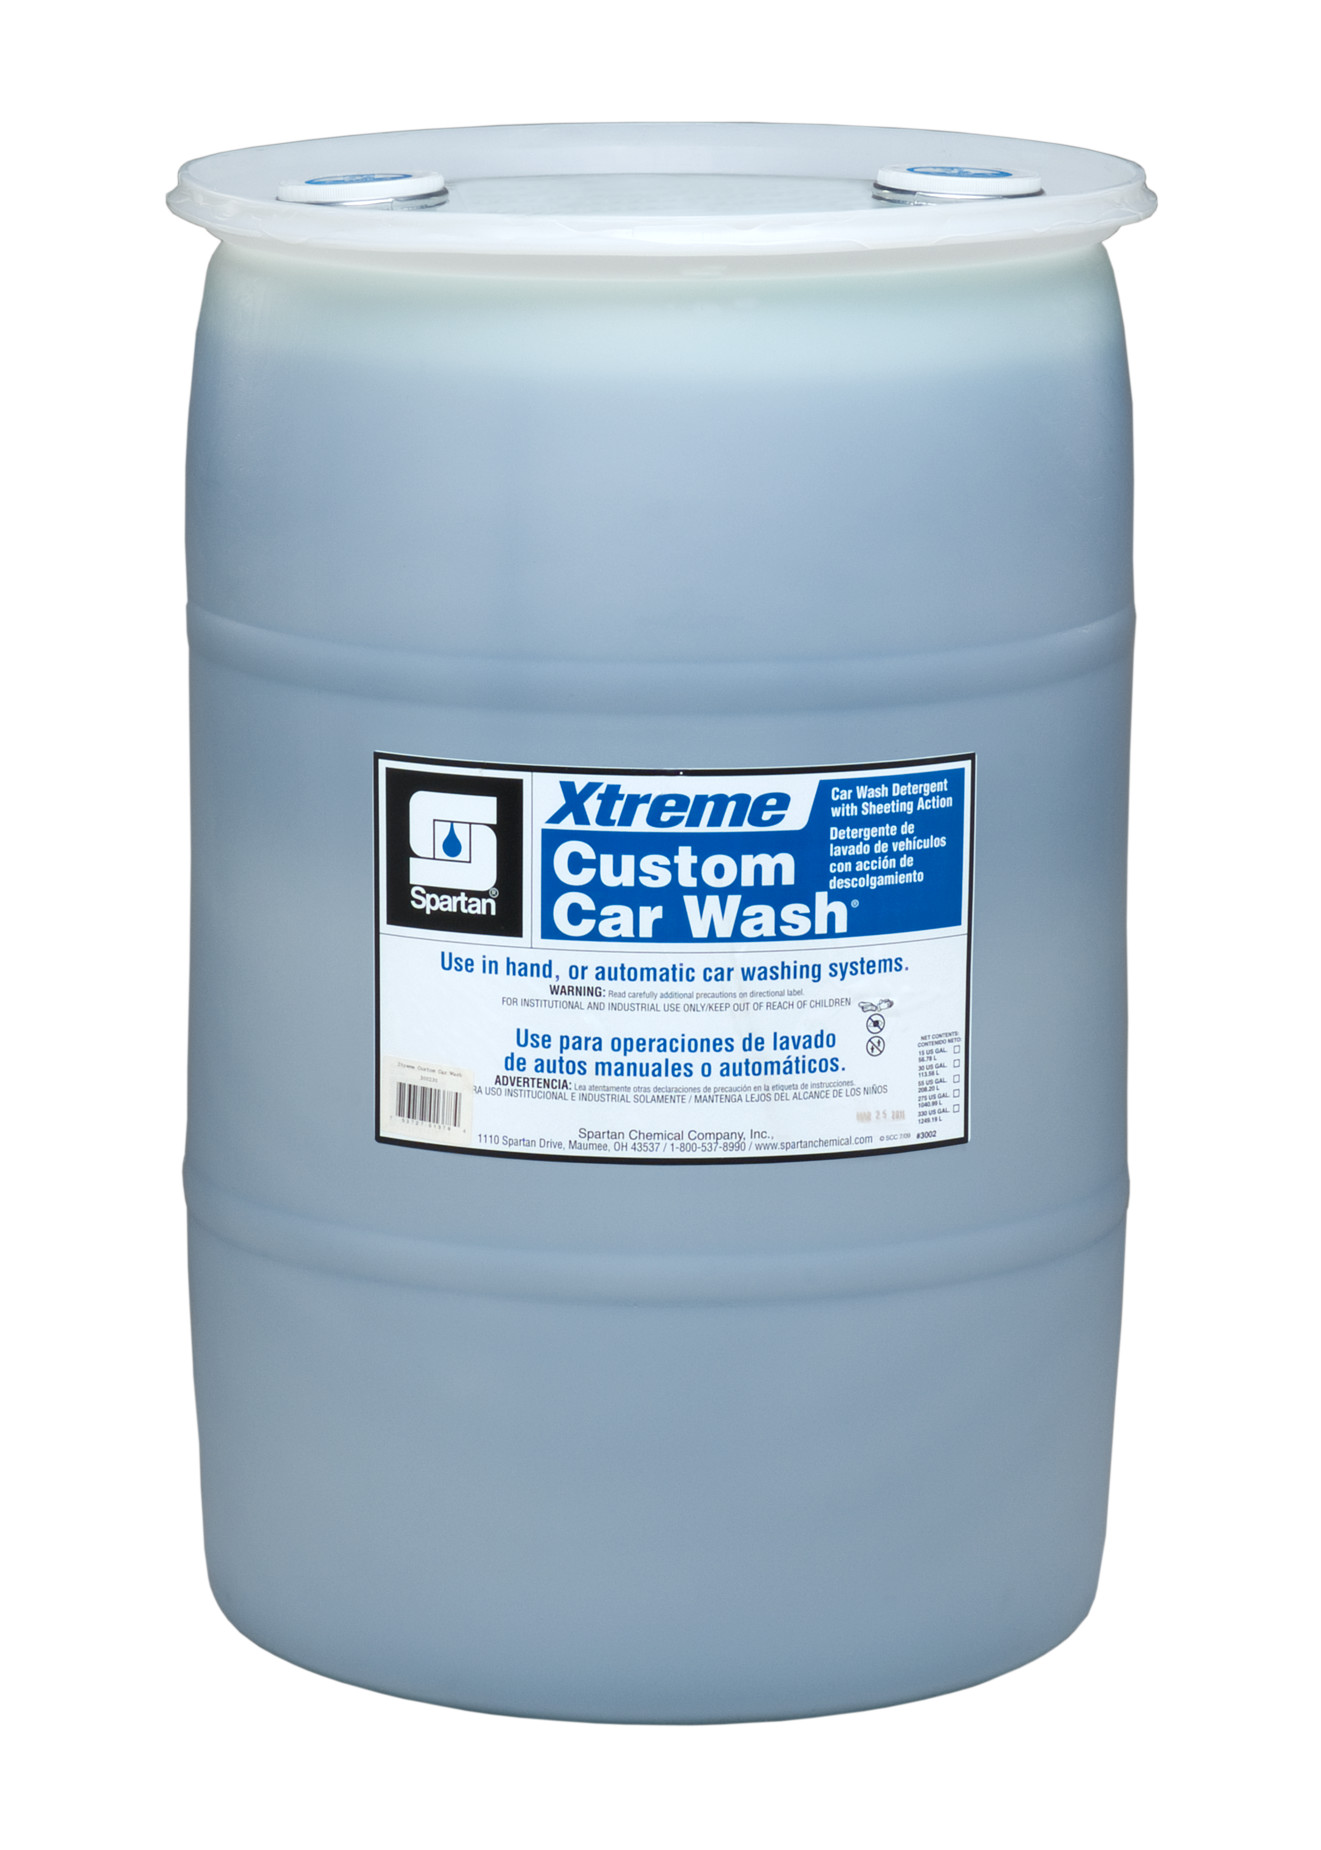 Spartan Chemical Company Xtreme Custom Car Wash, 30 GAL DRUM